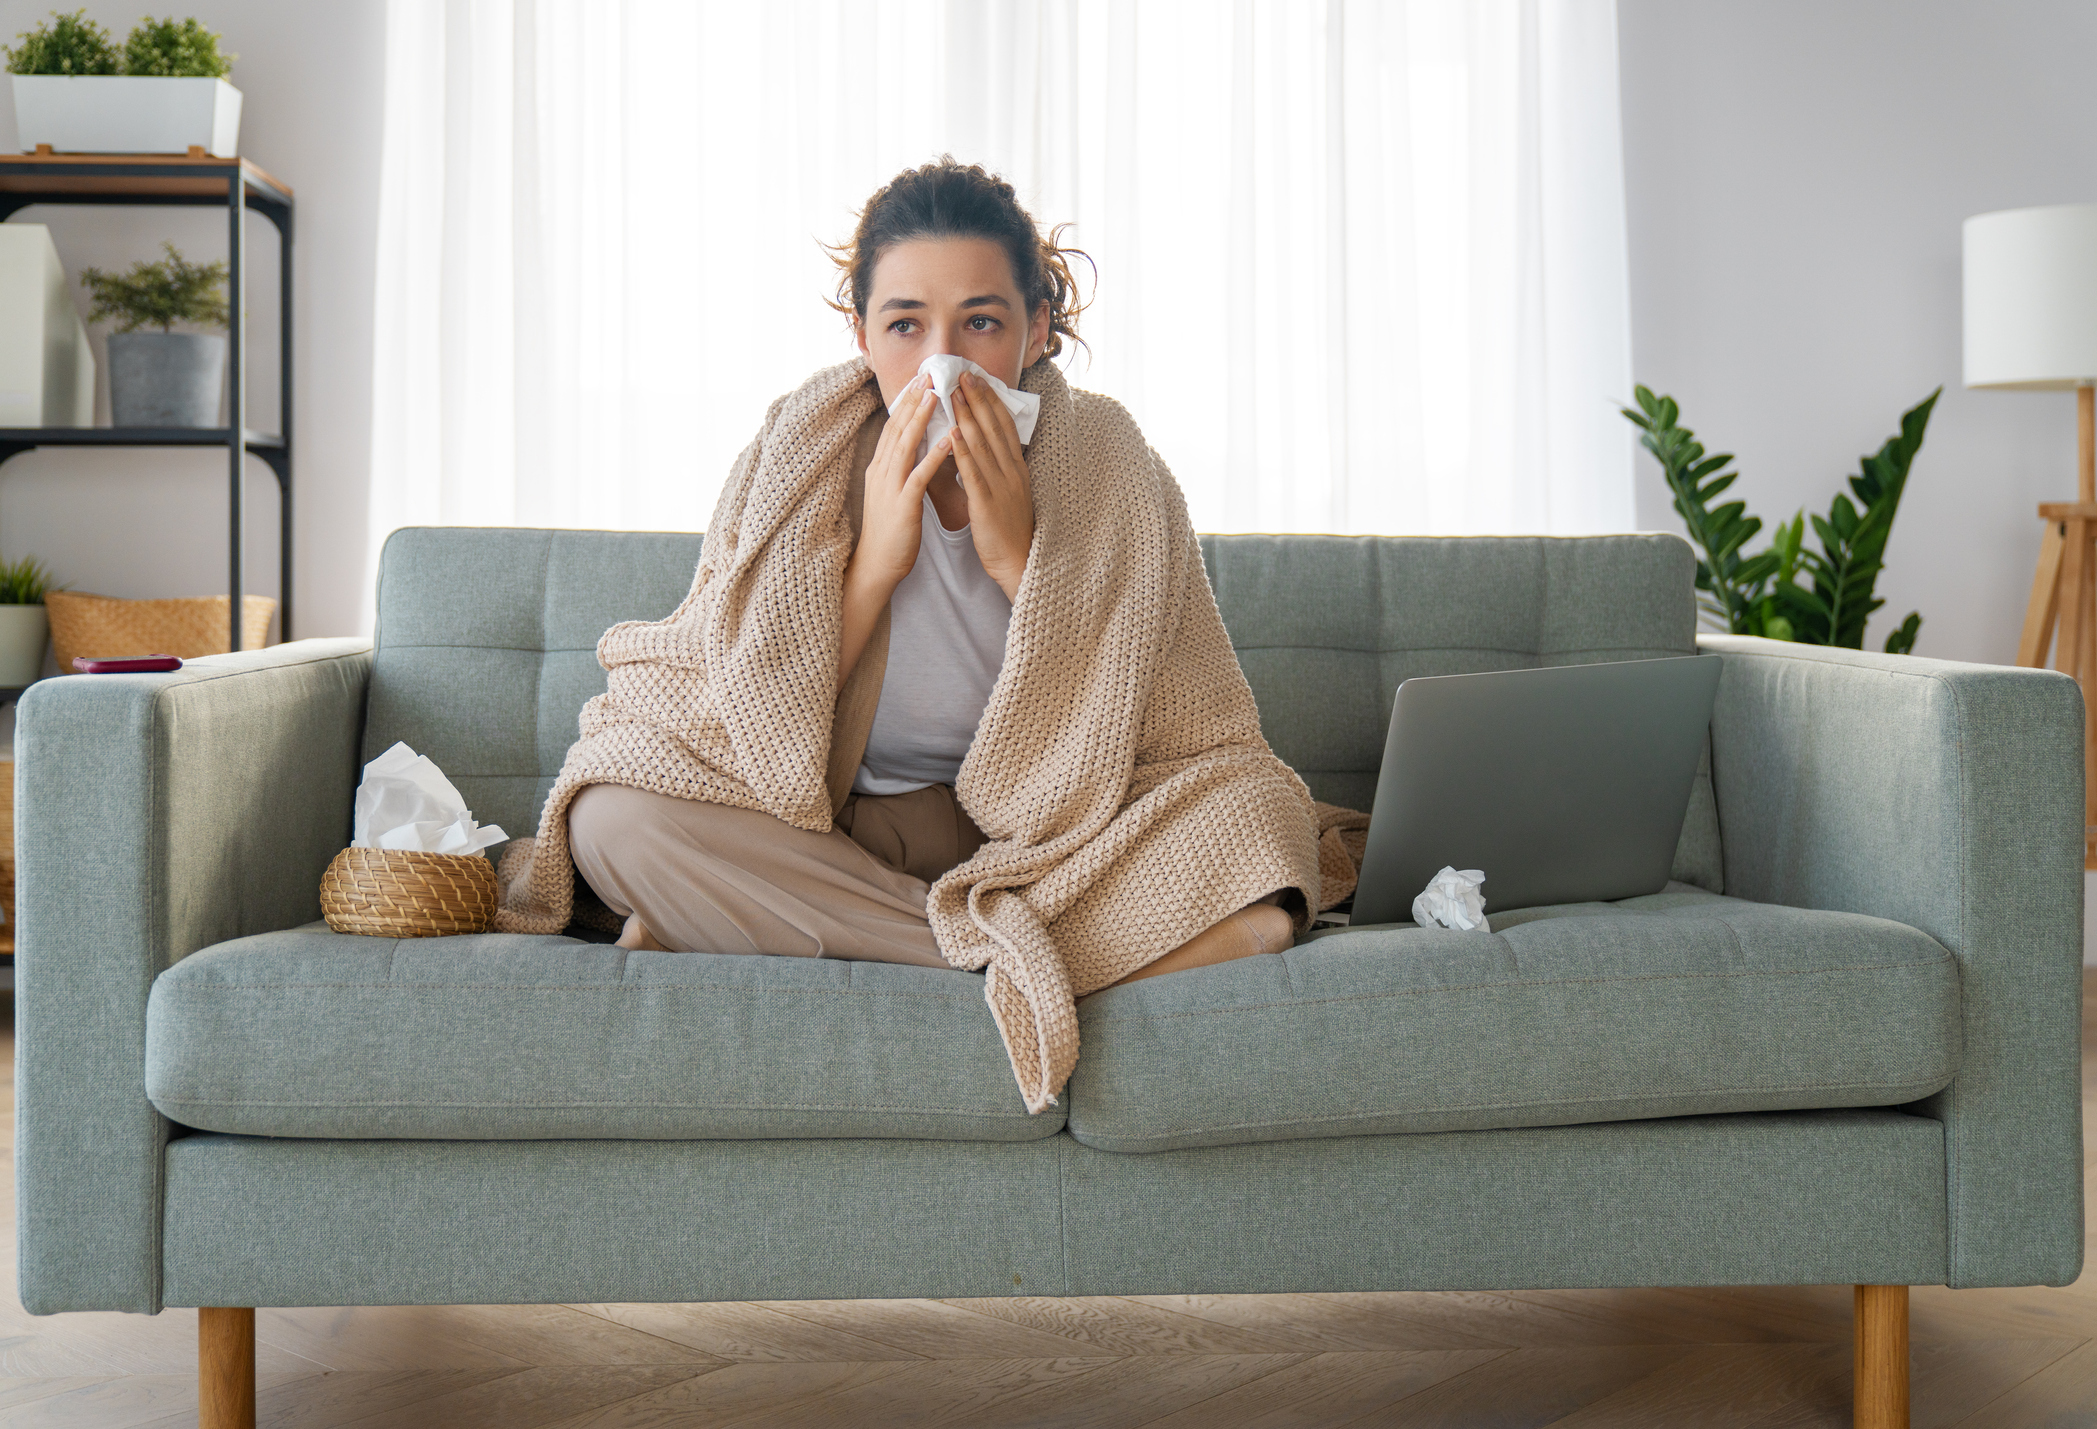 Mujer enferma sentada en el sofá, envuelta en una manta